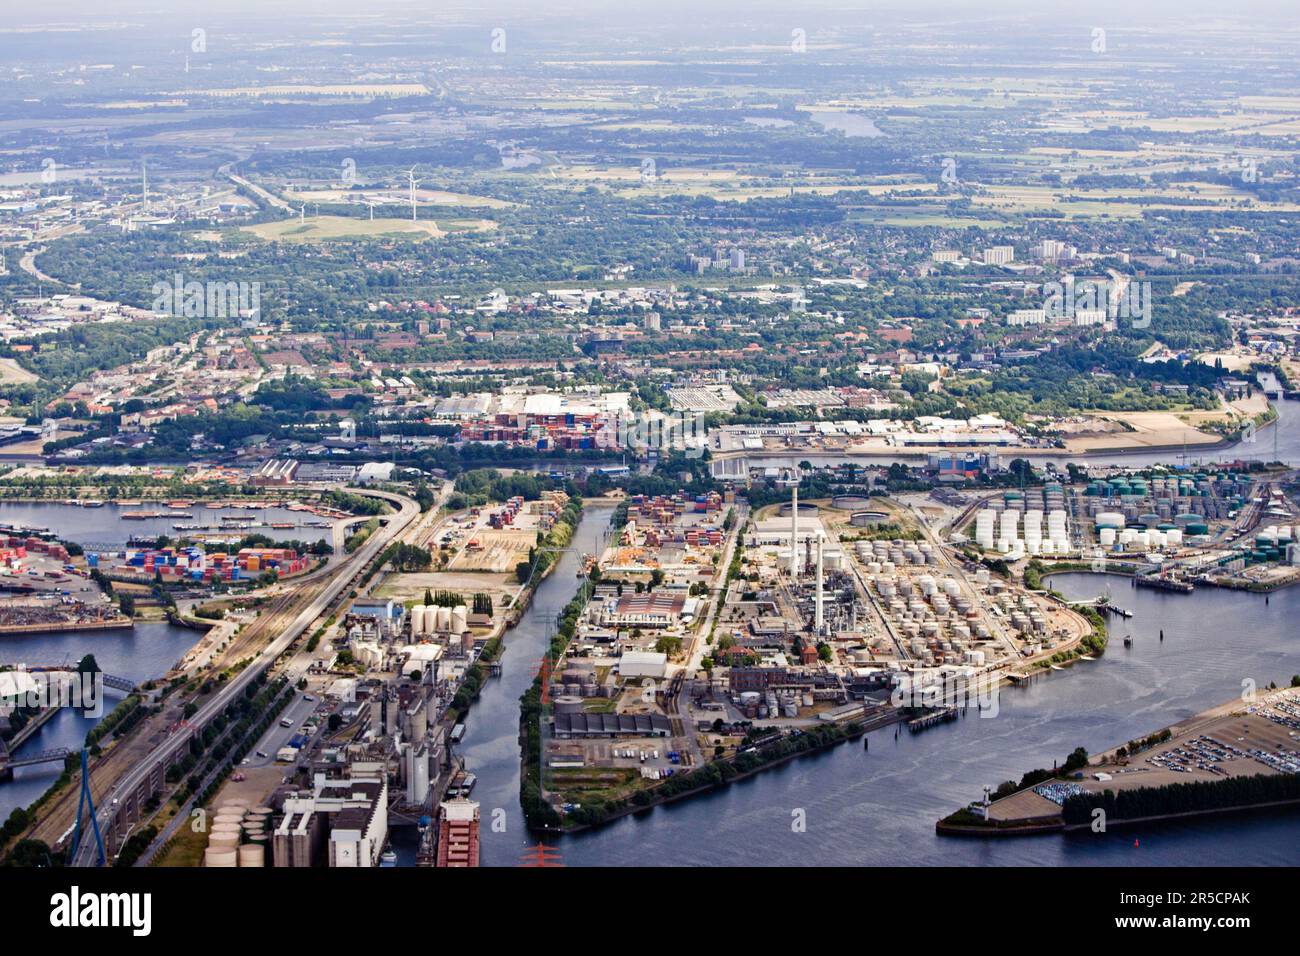 Ross Canal, Koehlbrand Bridge, Neuhoefer Canal, Rethe, Georgswerder, Hafen von Hamburg, Hamburg, Deutschland Stockfoto